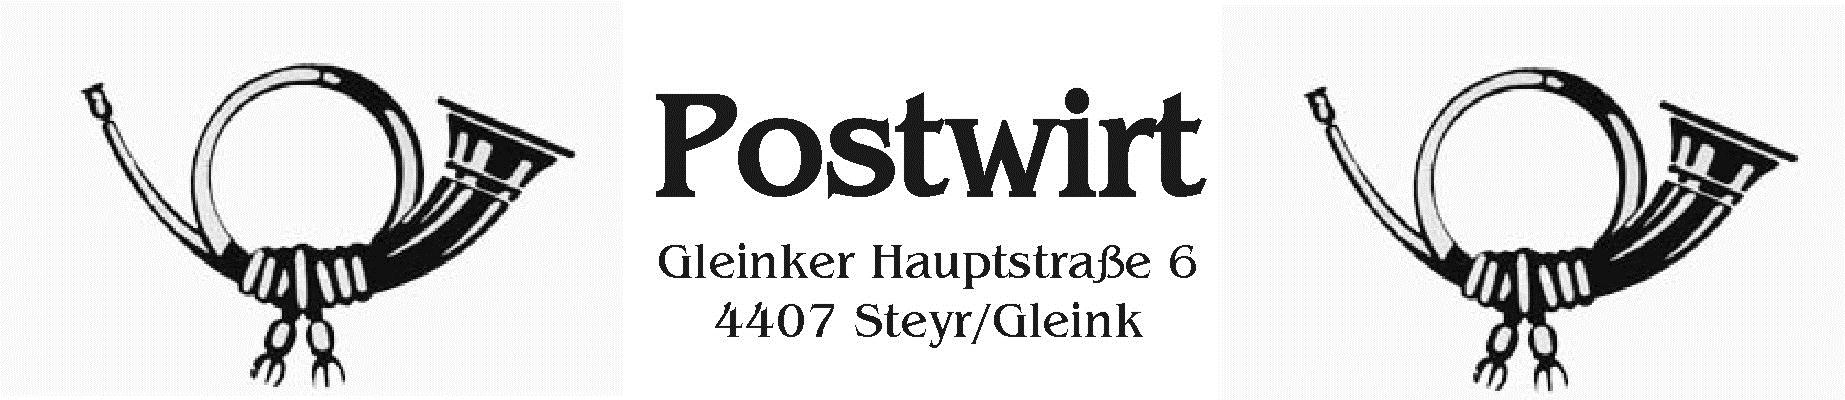 Postwirt, Gleinker Hauptstraße 6, 4407 Steyr/Gleink